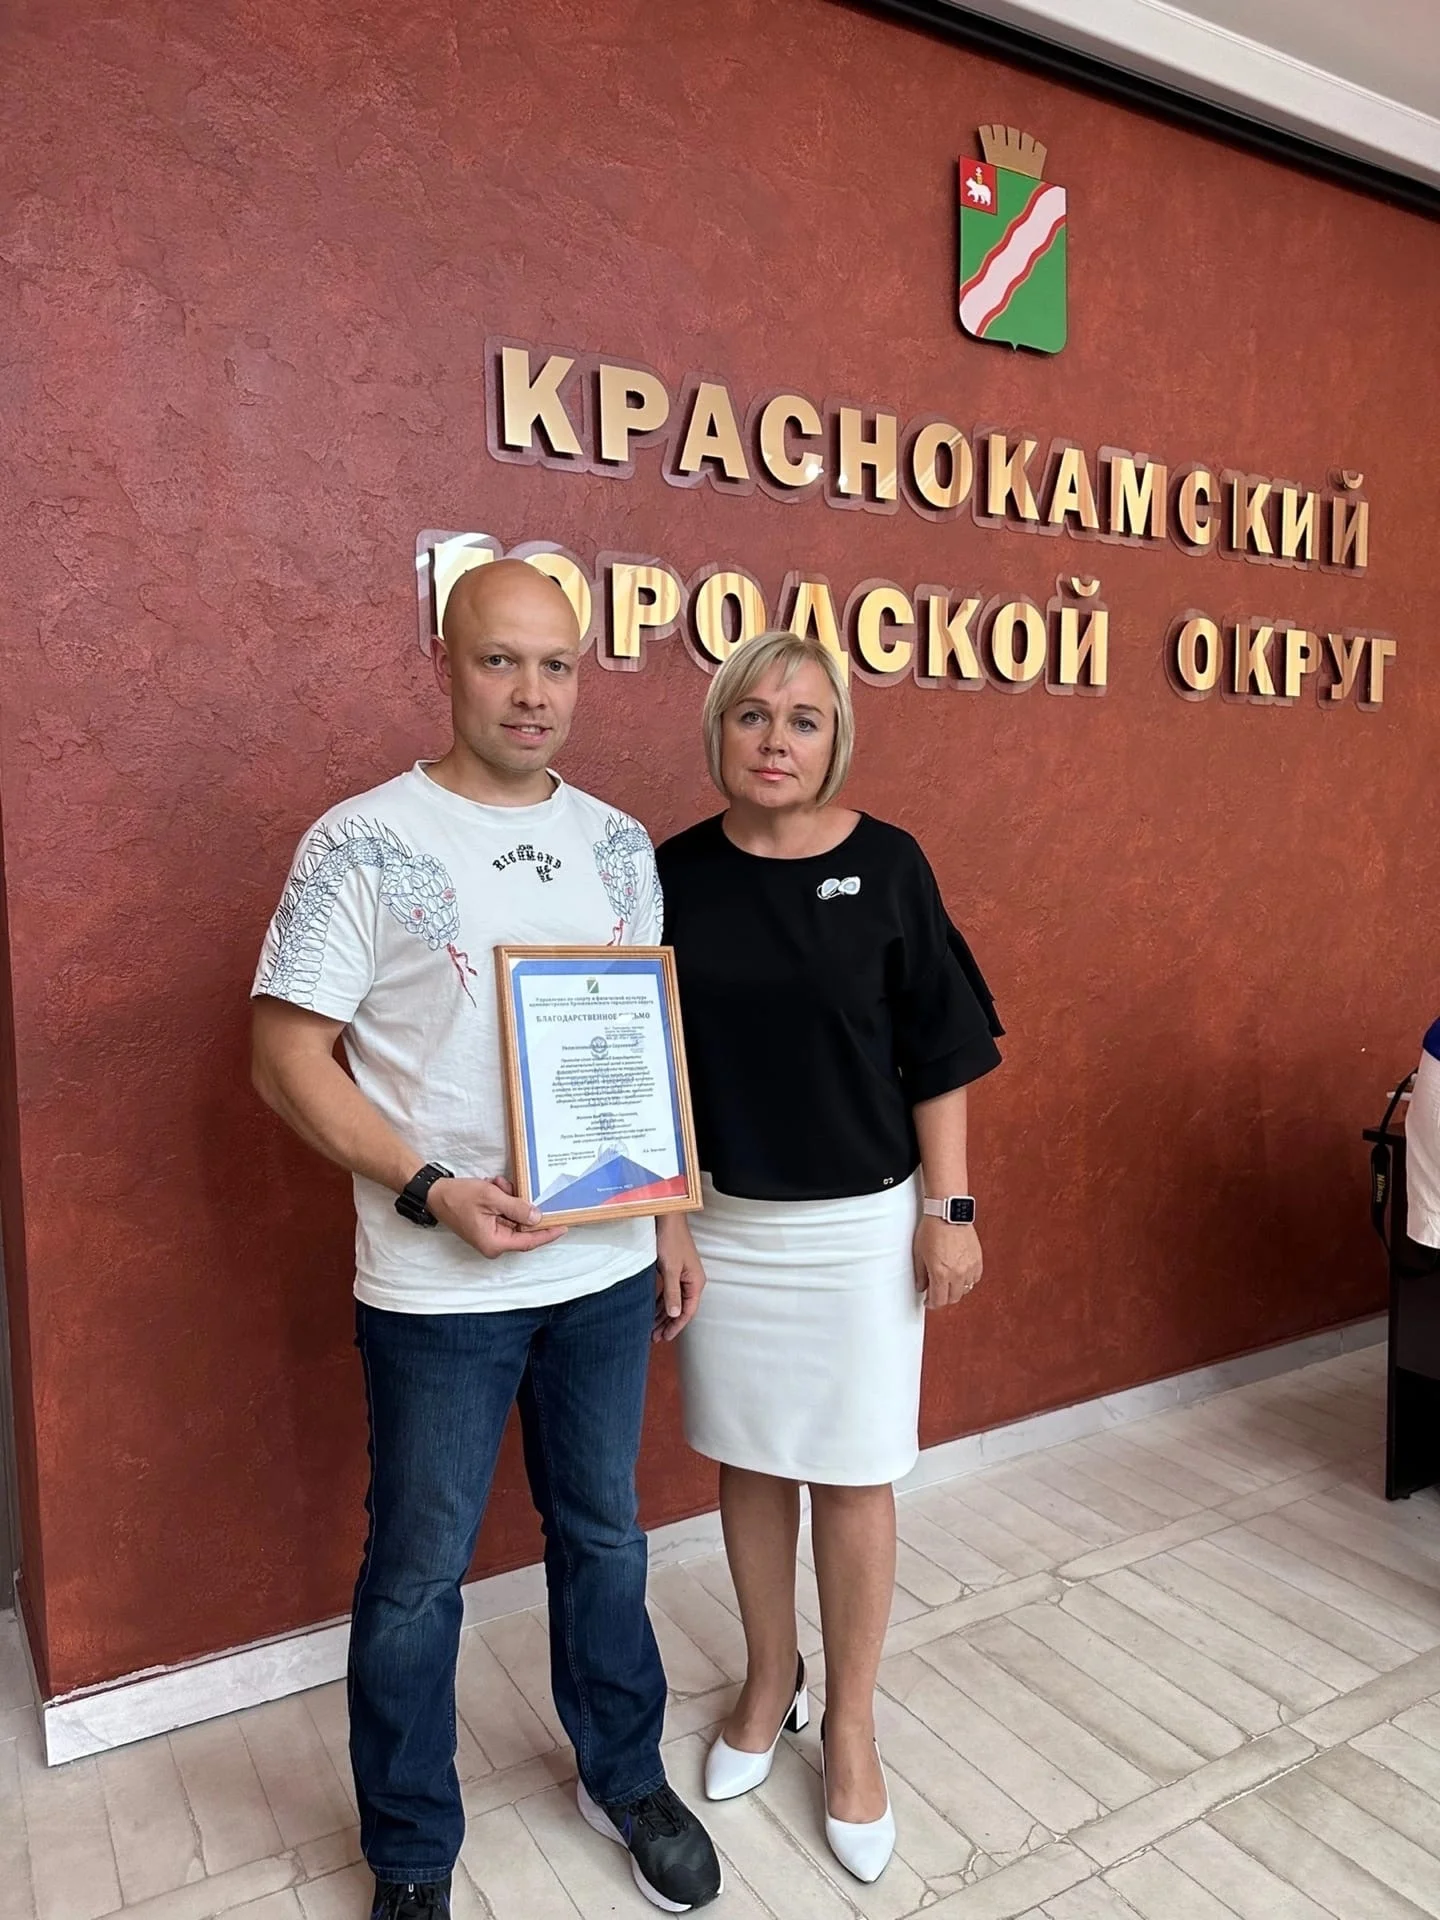 СК "ЗЕВС" помогает развивать спорт в Пермском крае